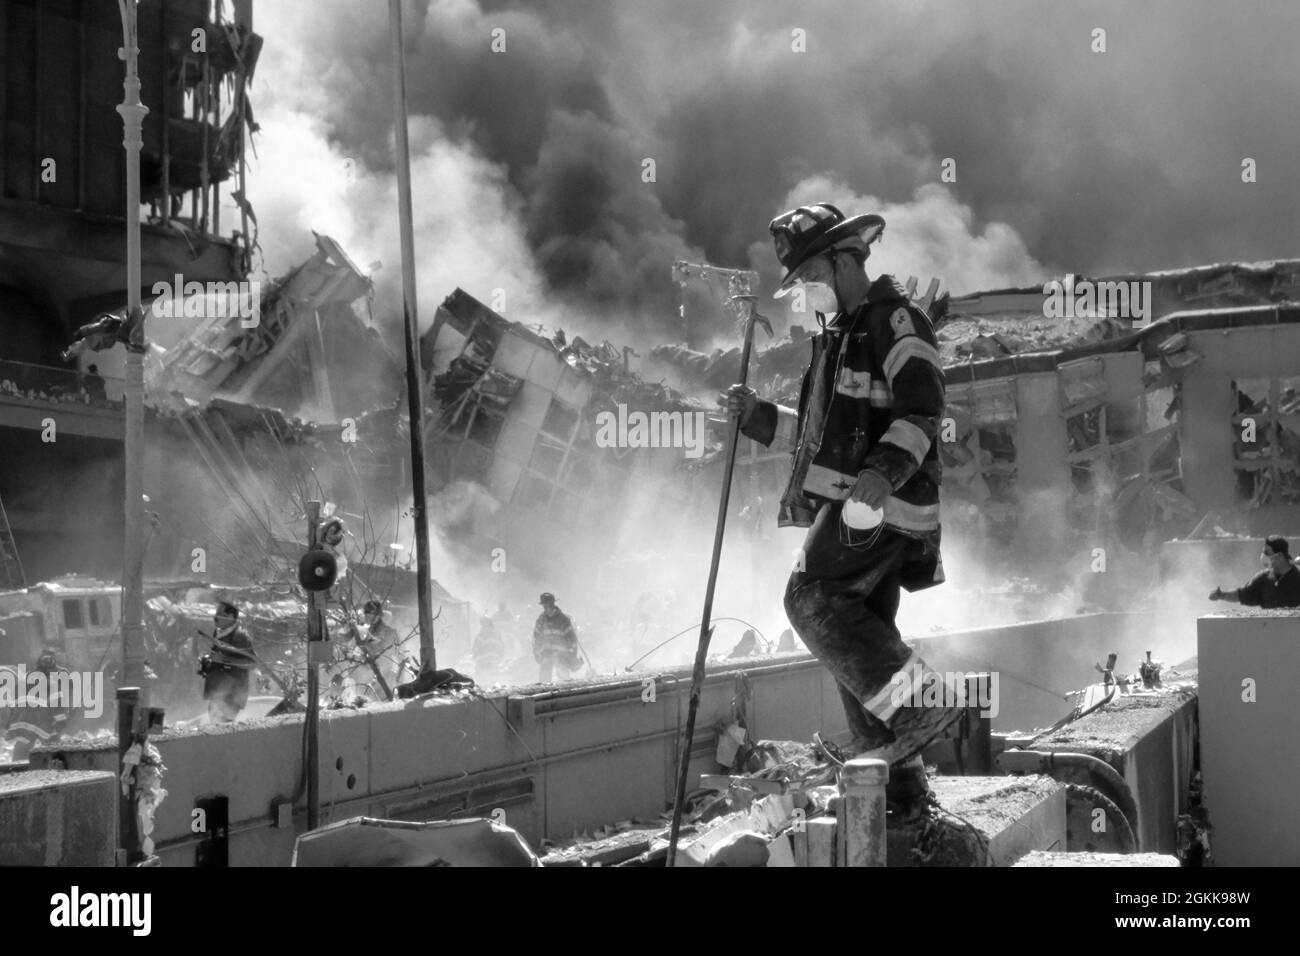 El bombero de la FDNY entre los escombros mientras las Torres Gemelas se queman durante el ataque terrorista en la ciudad de Nueva York el 11 de septiembre de 2001. (EE. UU.) Foto de stock